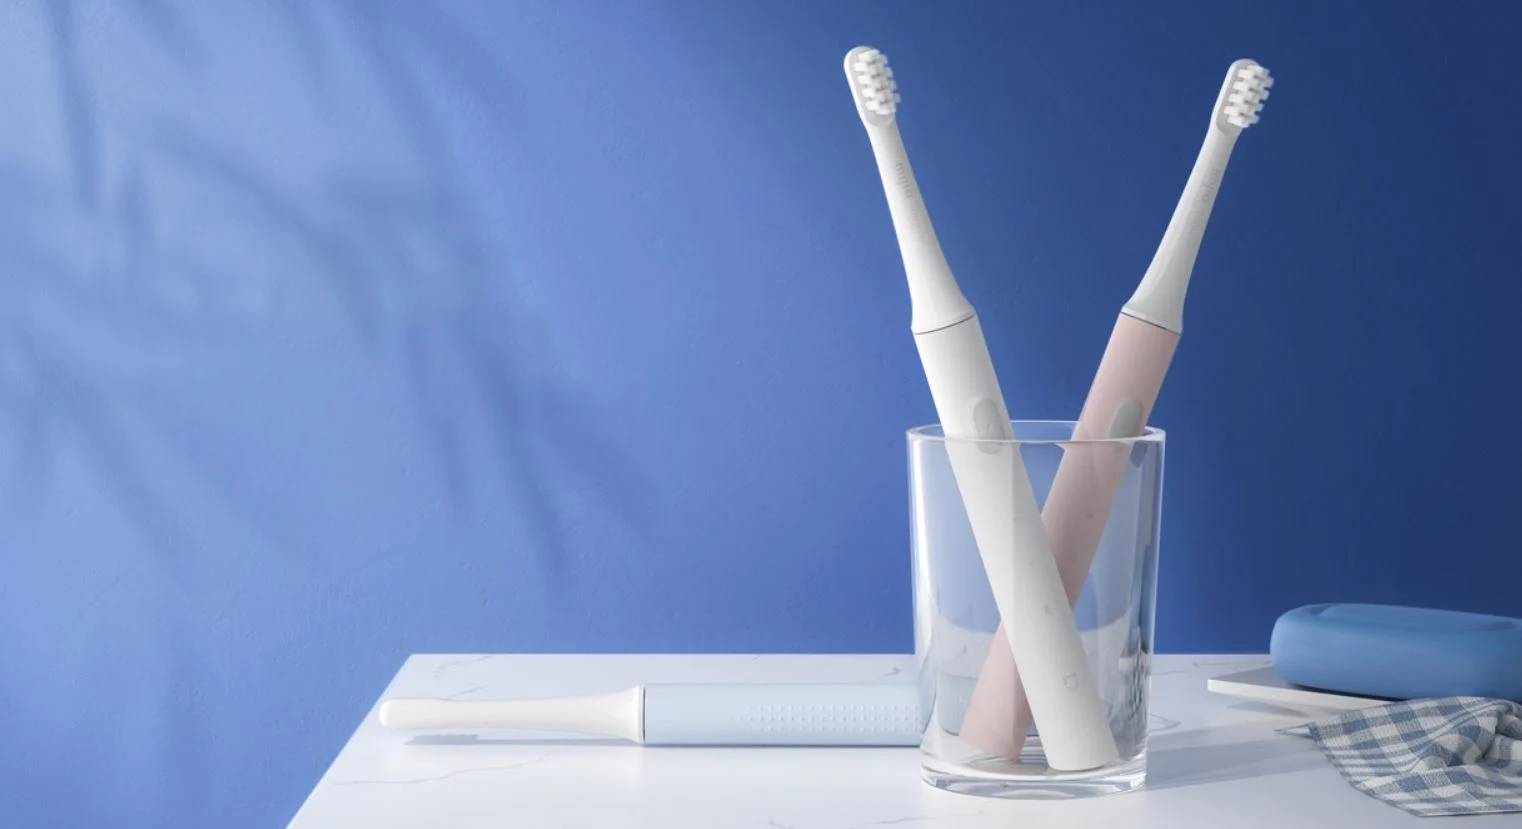 Este cepillo de dientes eléctrico de Xiaomi solo cuesta 7 euros y arrasa en AliExpress. Noticias Xiaomi Adictos